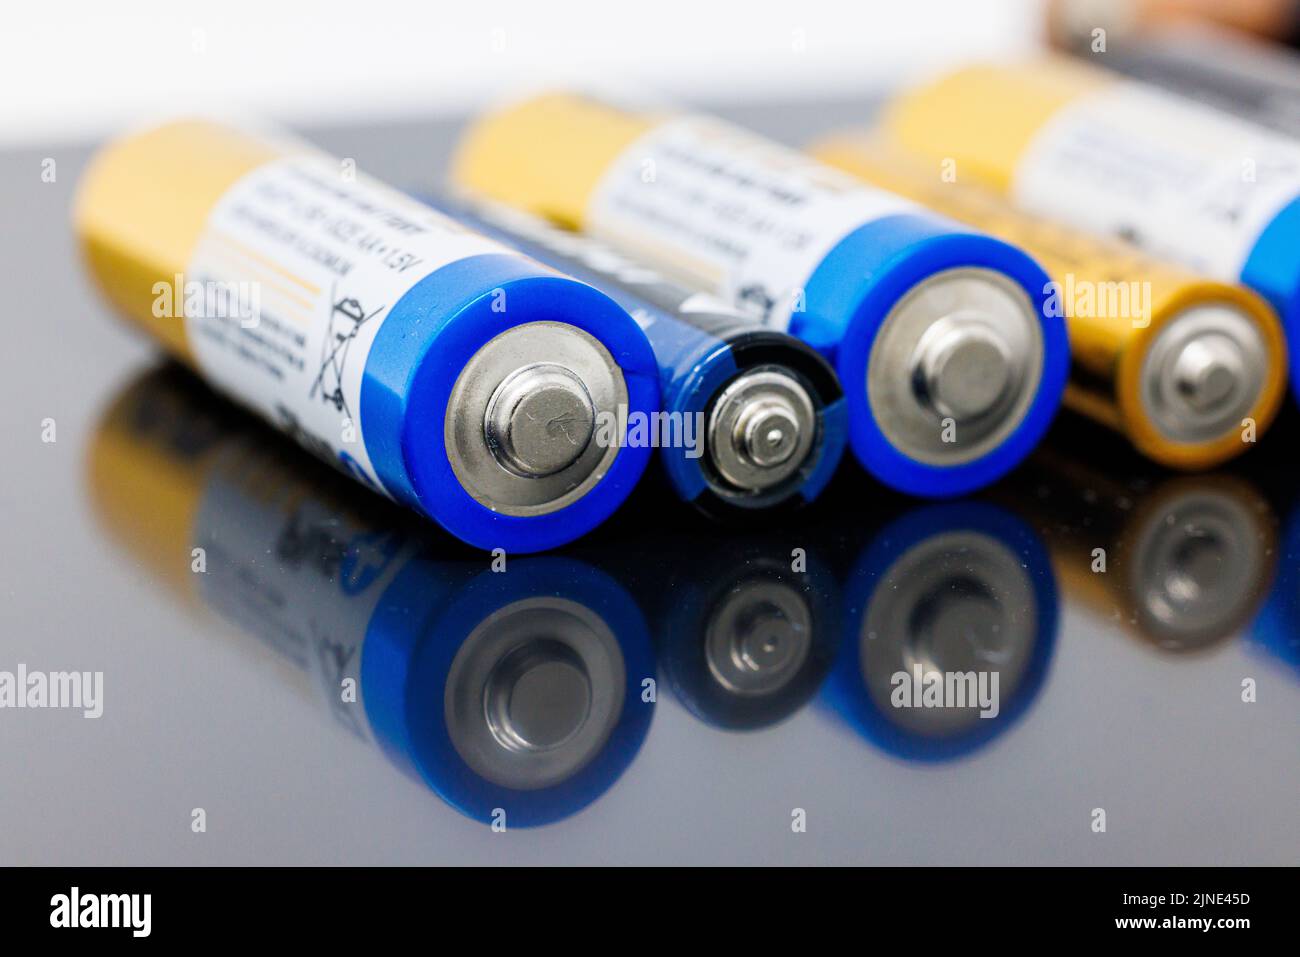 Eine Nahaufnahme einer Reihe von AAA- und AA-Batterien auf einer grauen reflektierenden Oberfläche Stockfoto